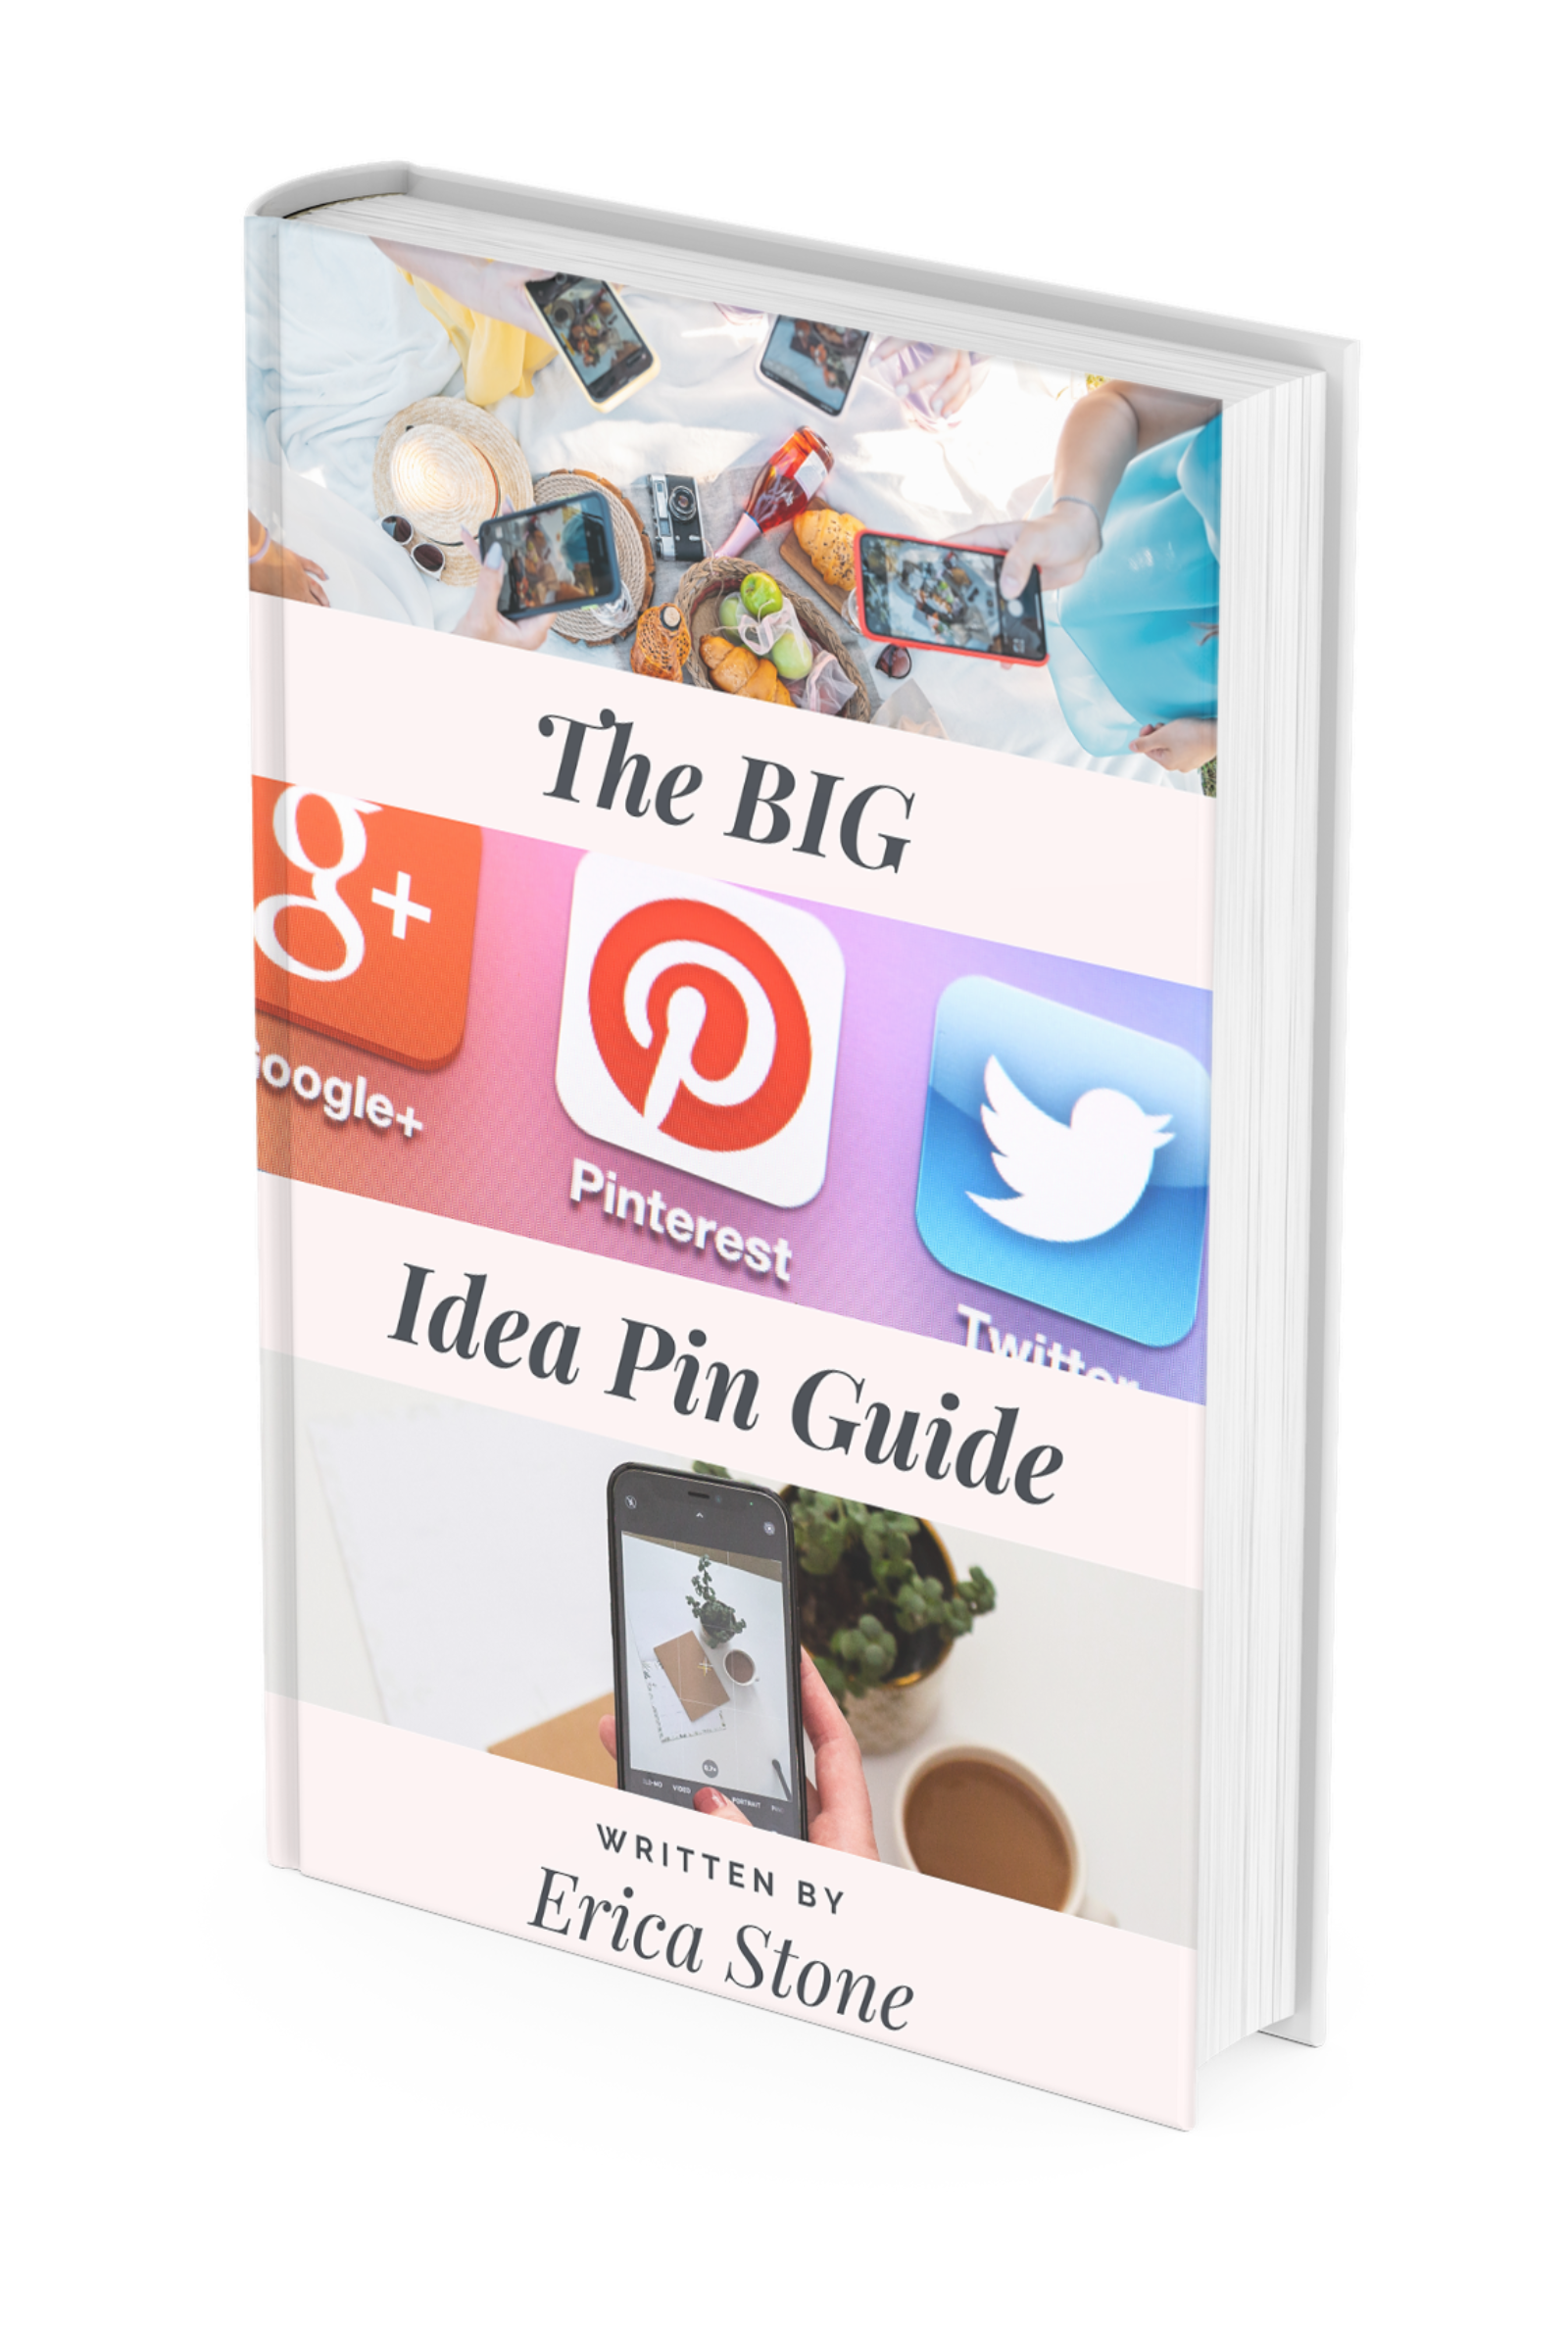 The BIG Idea Pin Guide